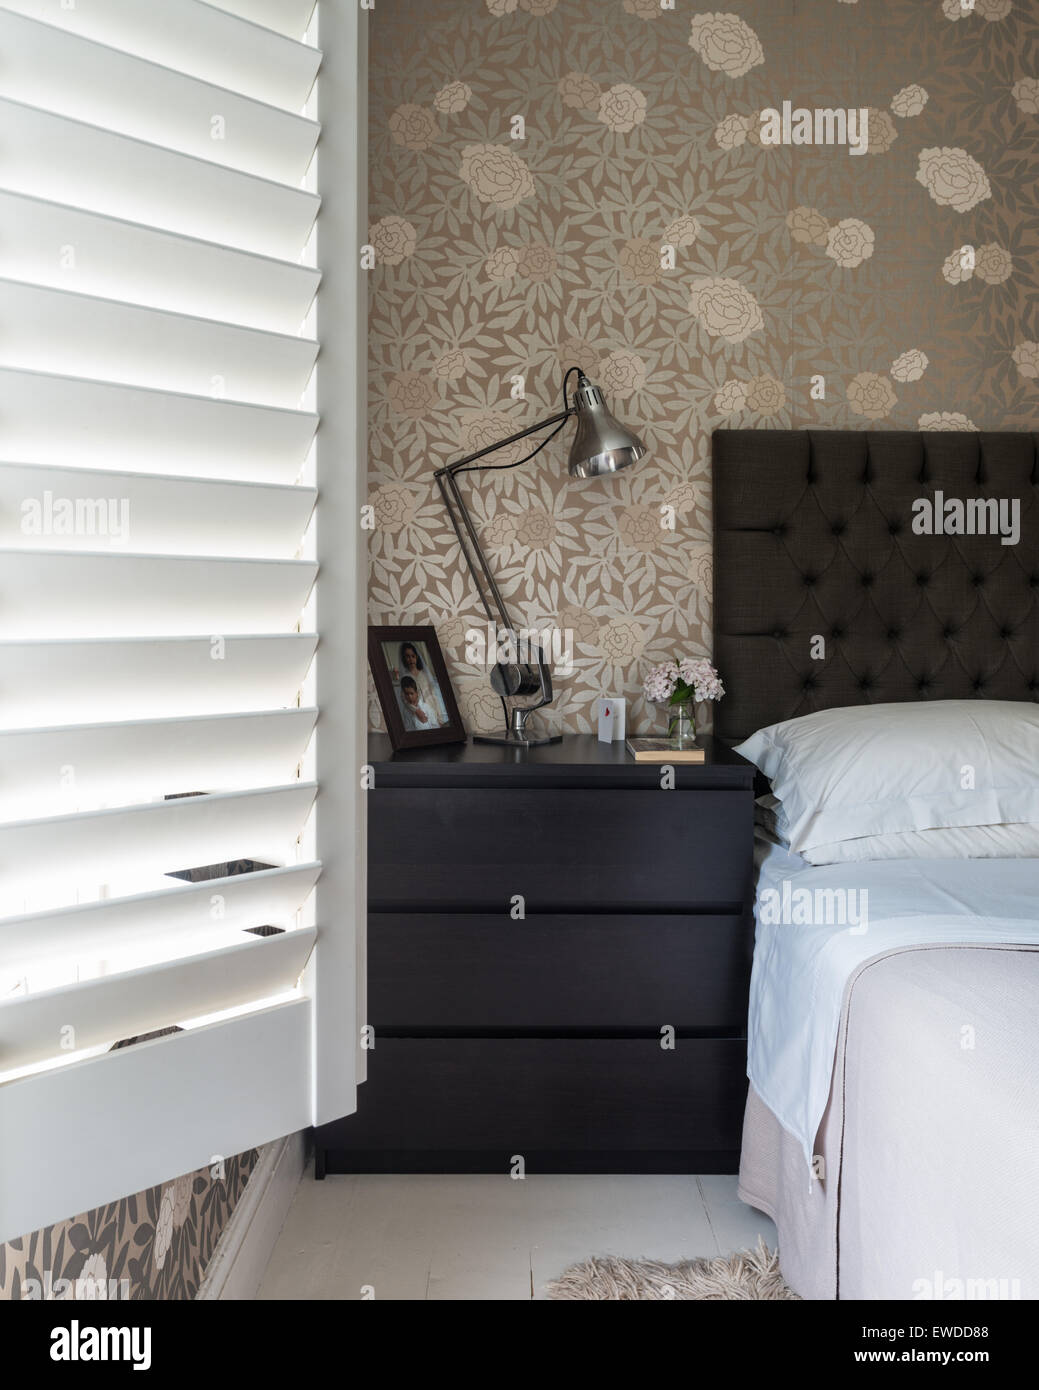 Osbourne & poco metálico imprimir papel tapiz floral en dormitorio con persianas de madera y cabecera seguro Foto de stock